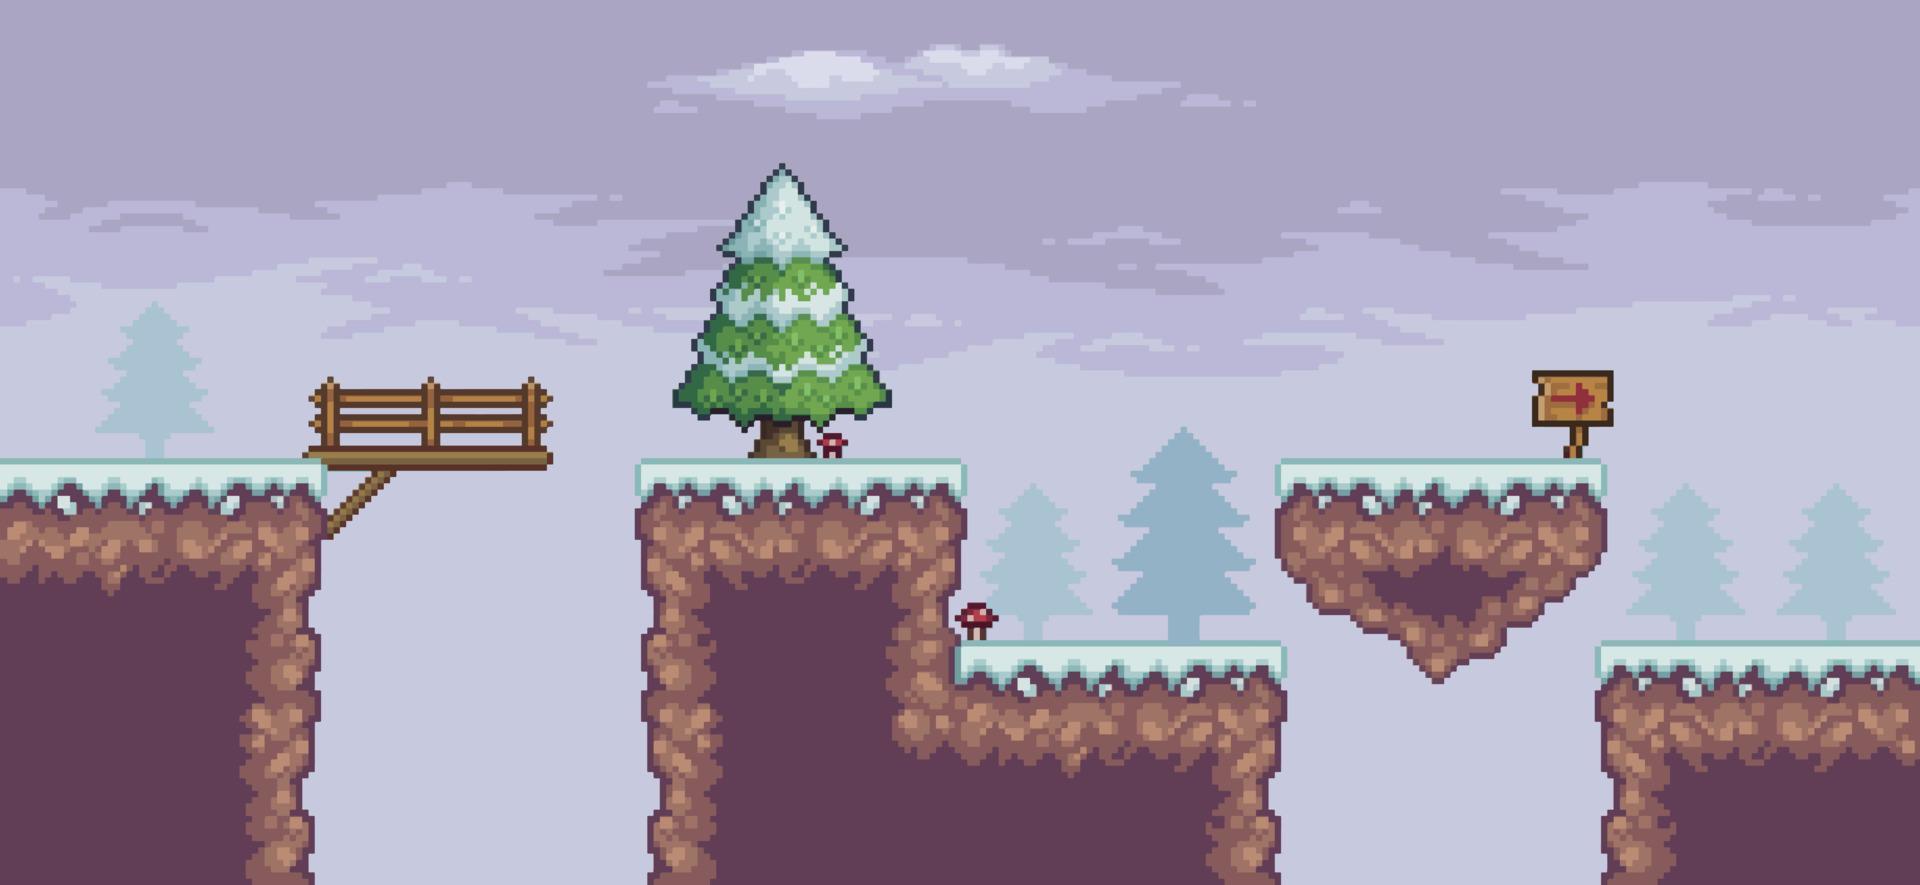 escena de juego de arte de píxeles en la nieve con pinos, isla flotante, puente y nubes de fondo vectorial de 8 bits vector